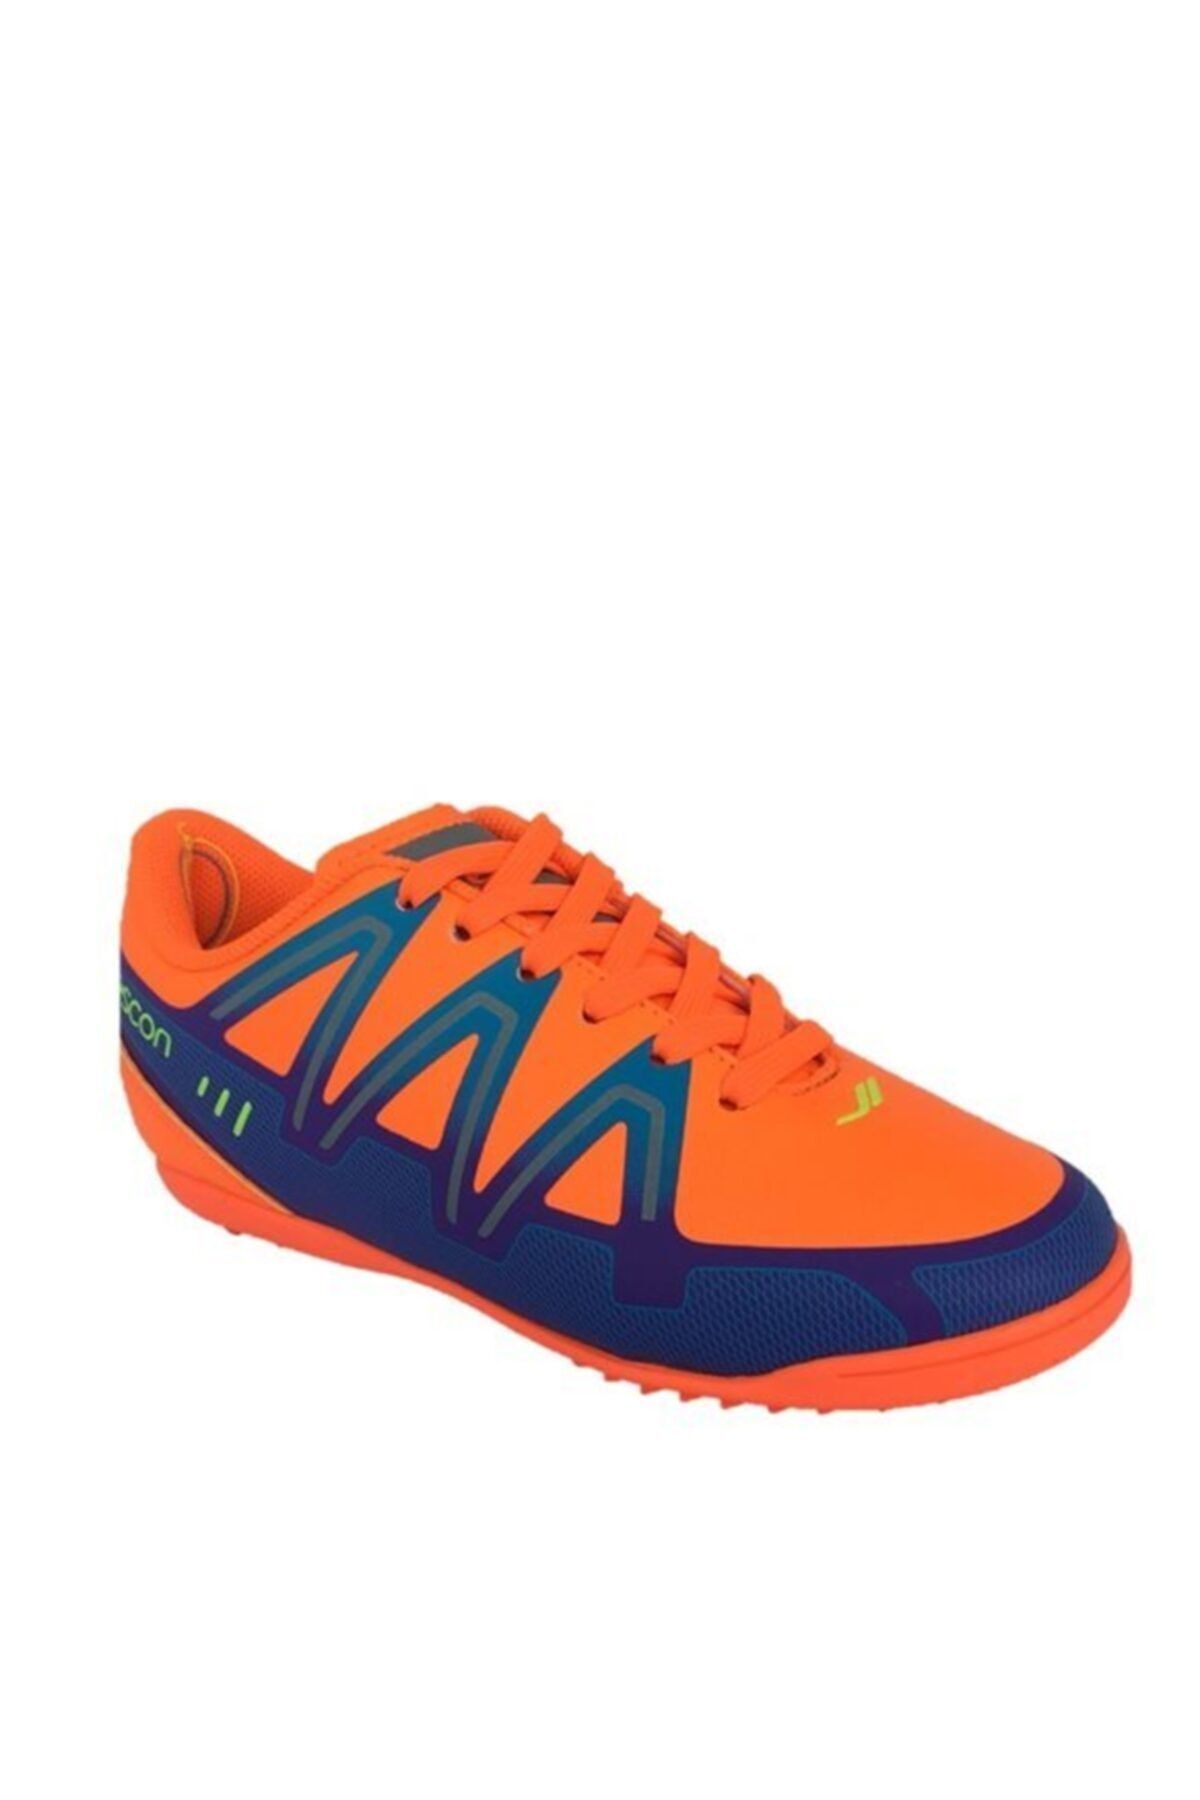 Lescon Fosfor-turuncu Halısaha Spor Ayakkabı